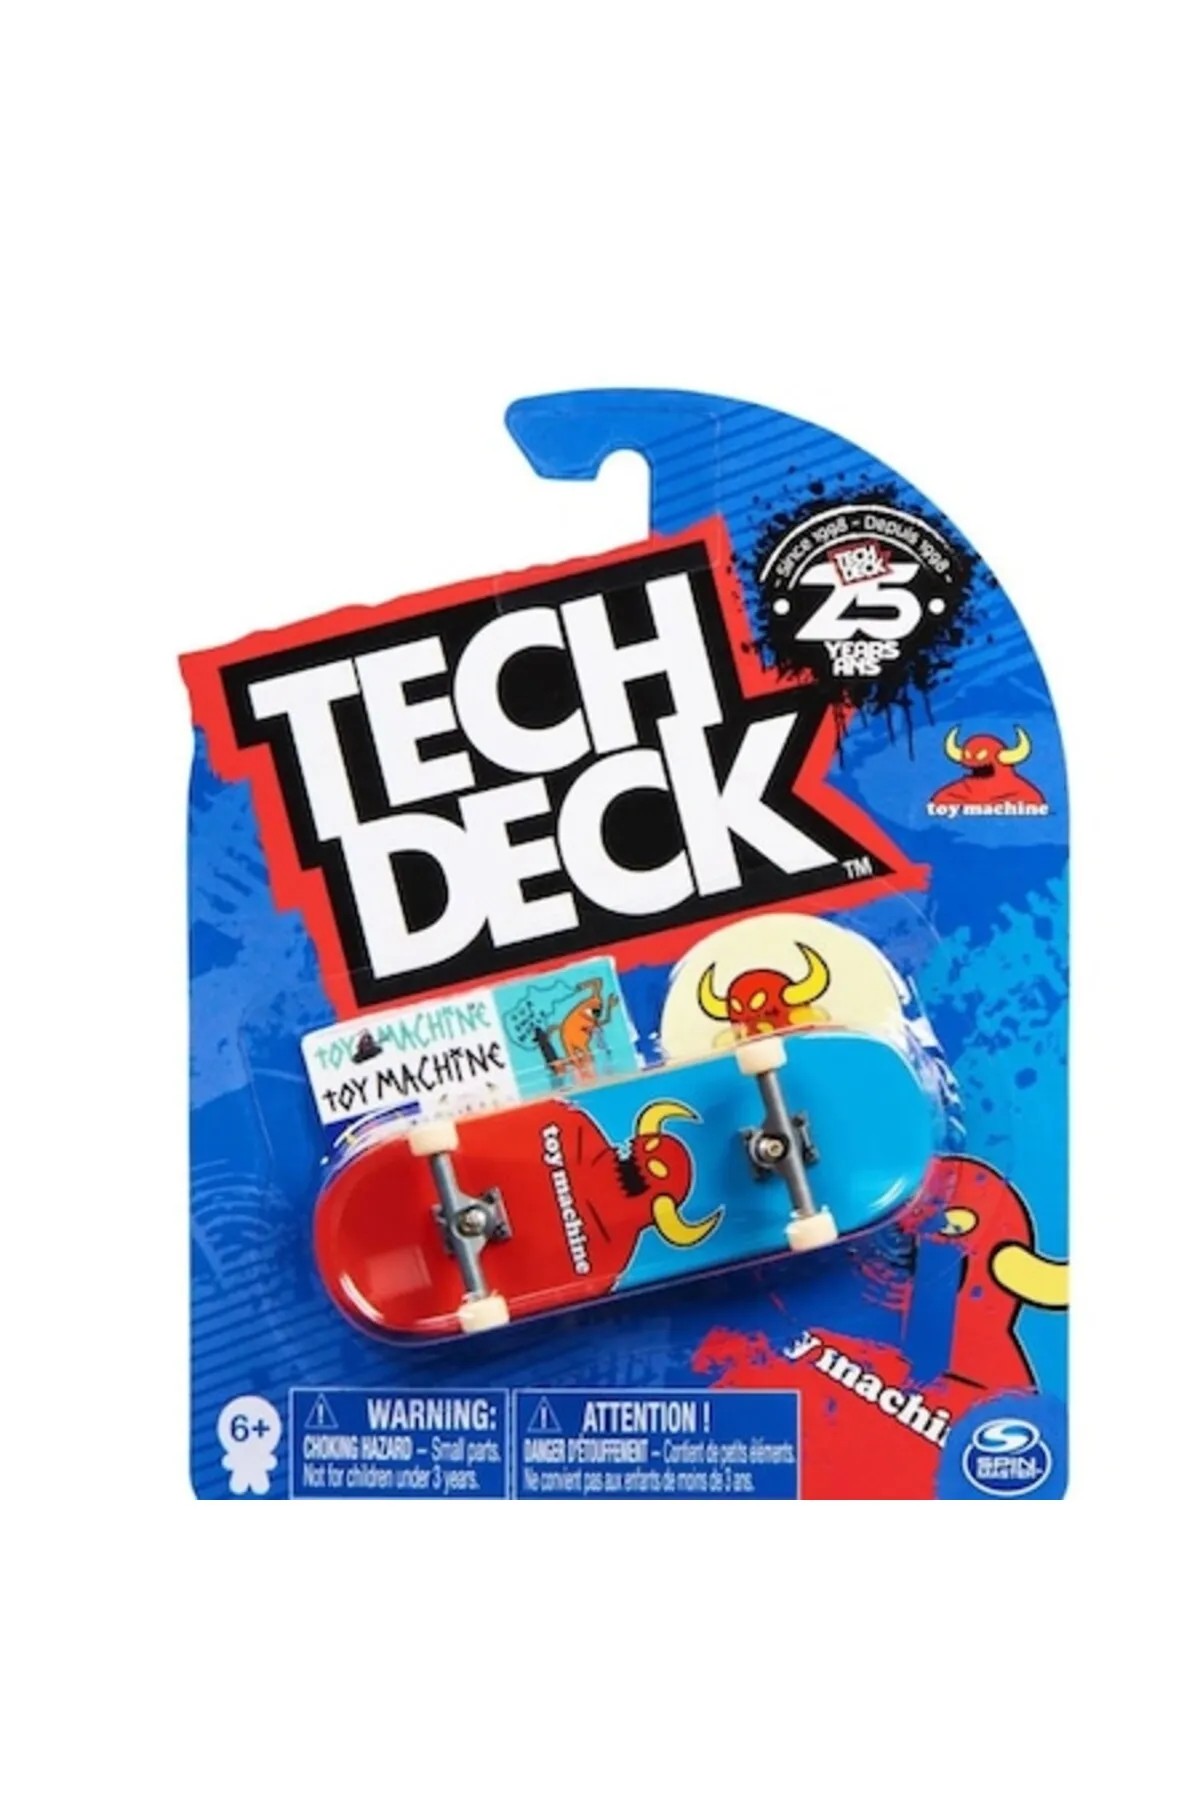 Spinmaster Tech Deck Toy Machine 20141234